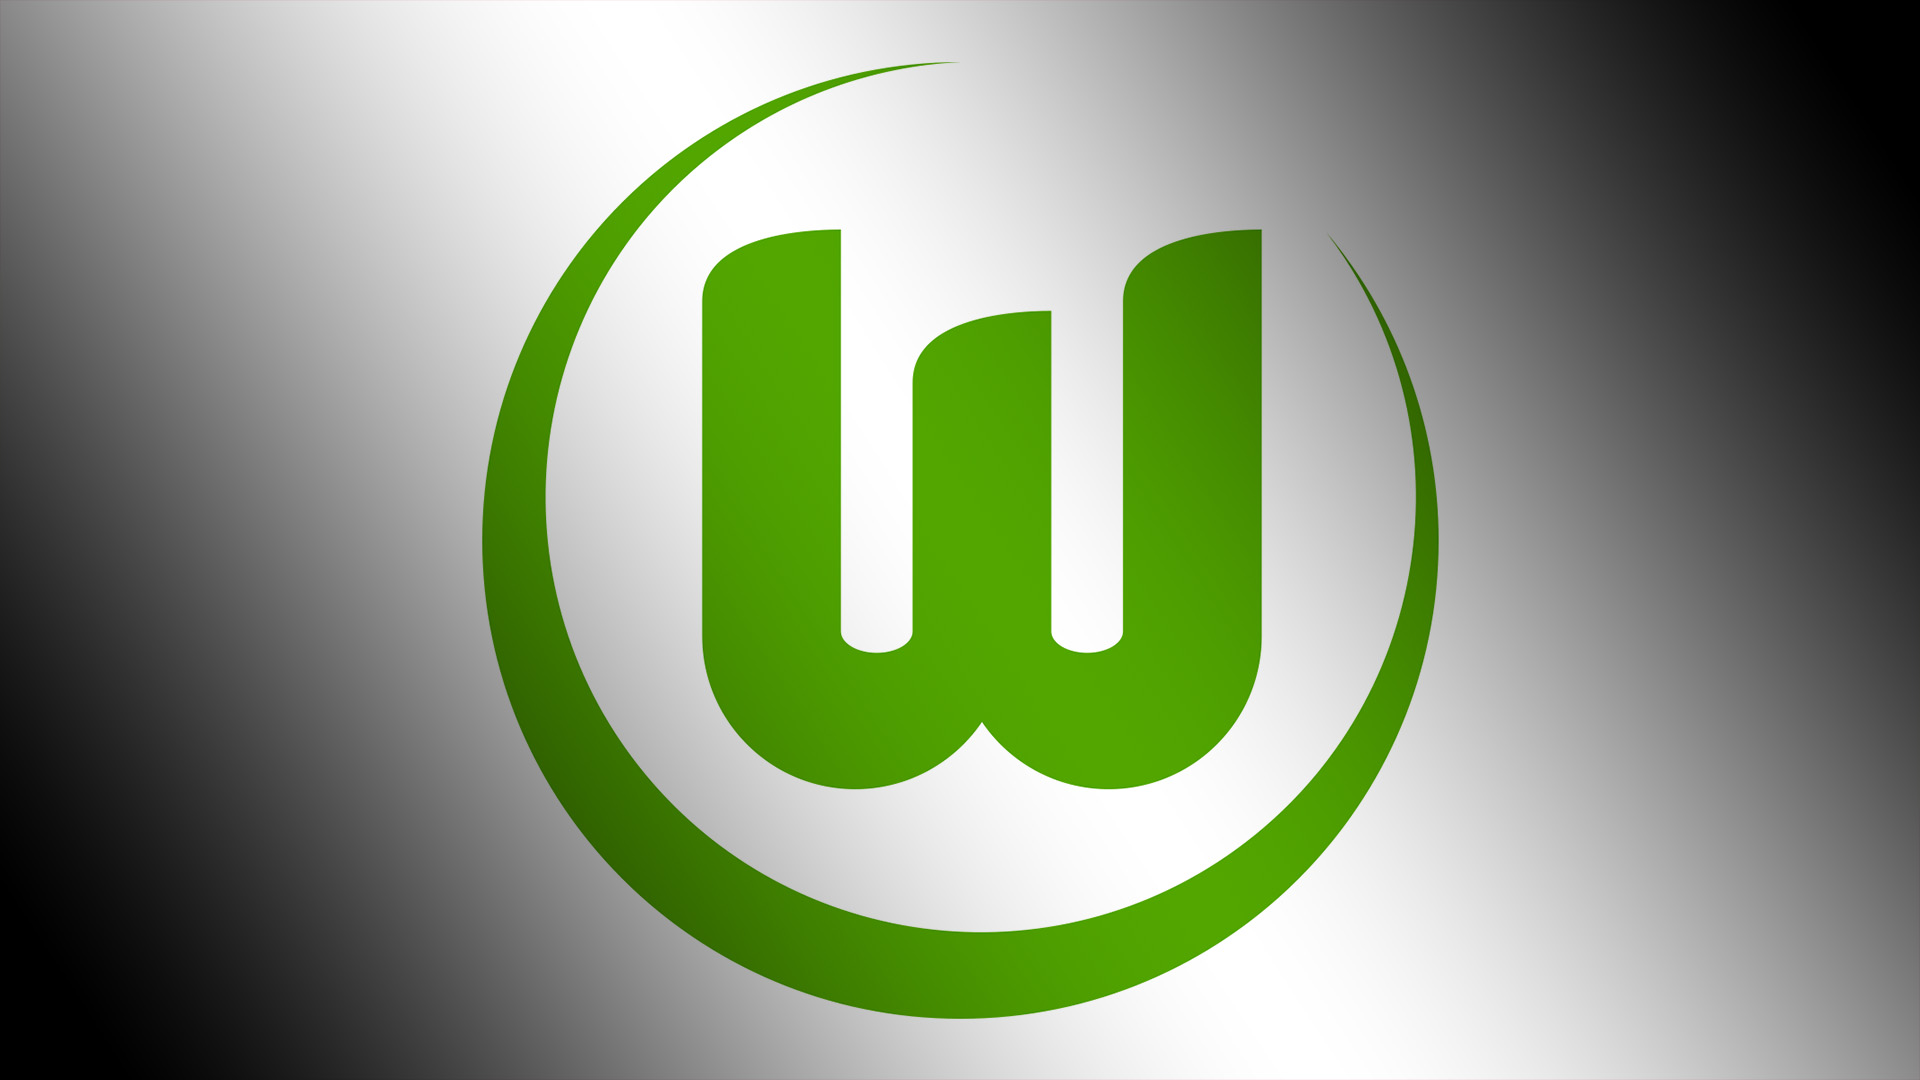 Vfl - Vfl Wolfsburg , HD Wallpaper & Backgrounds